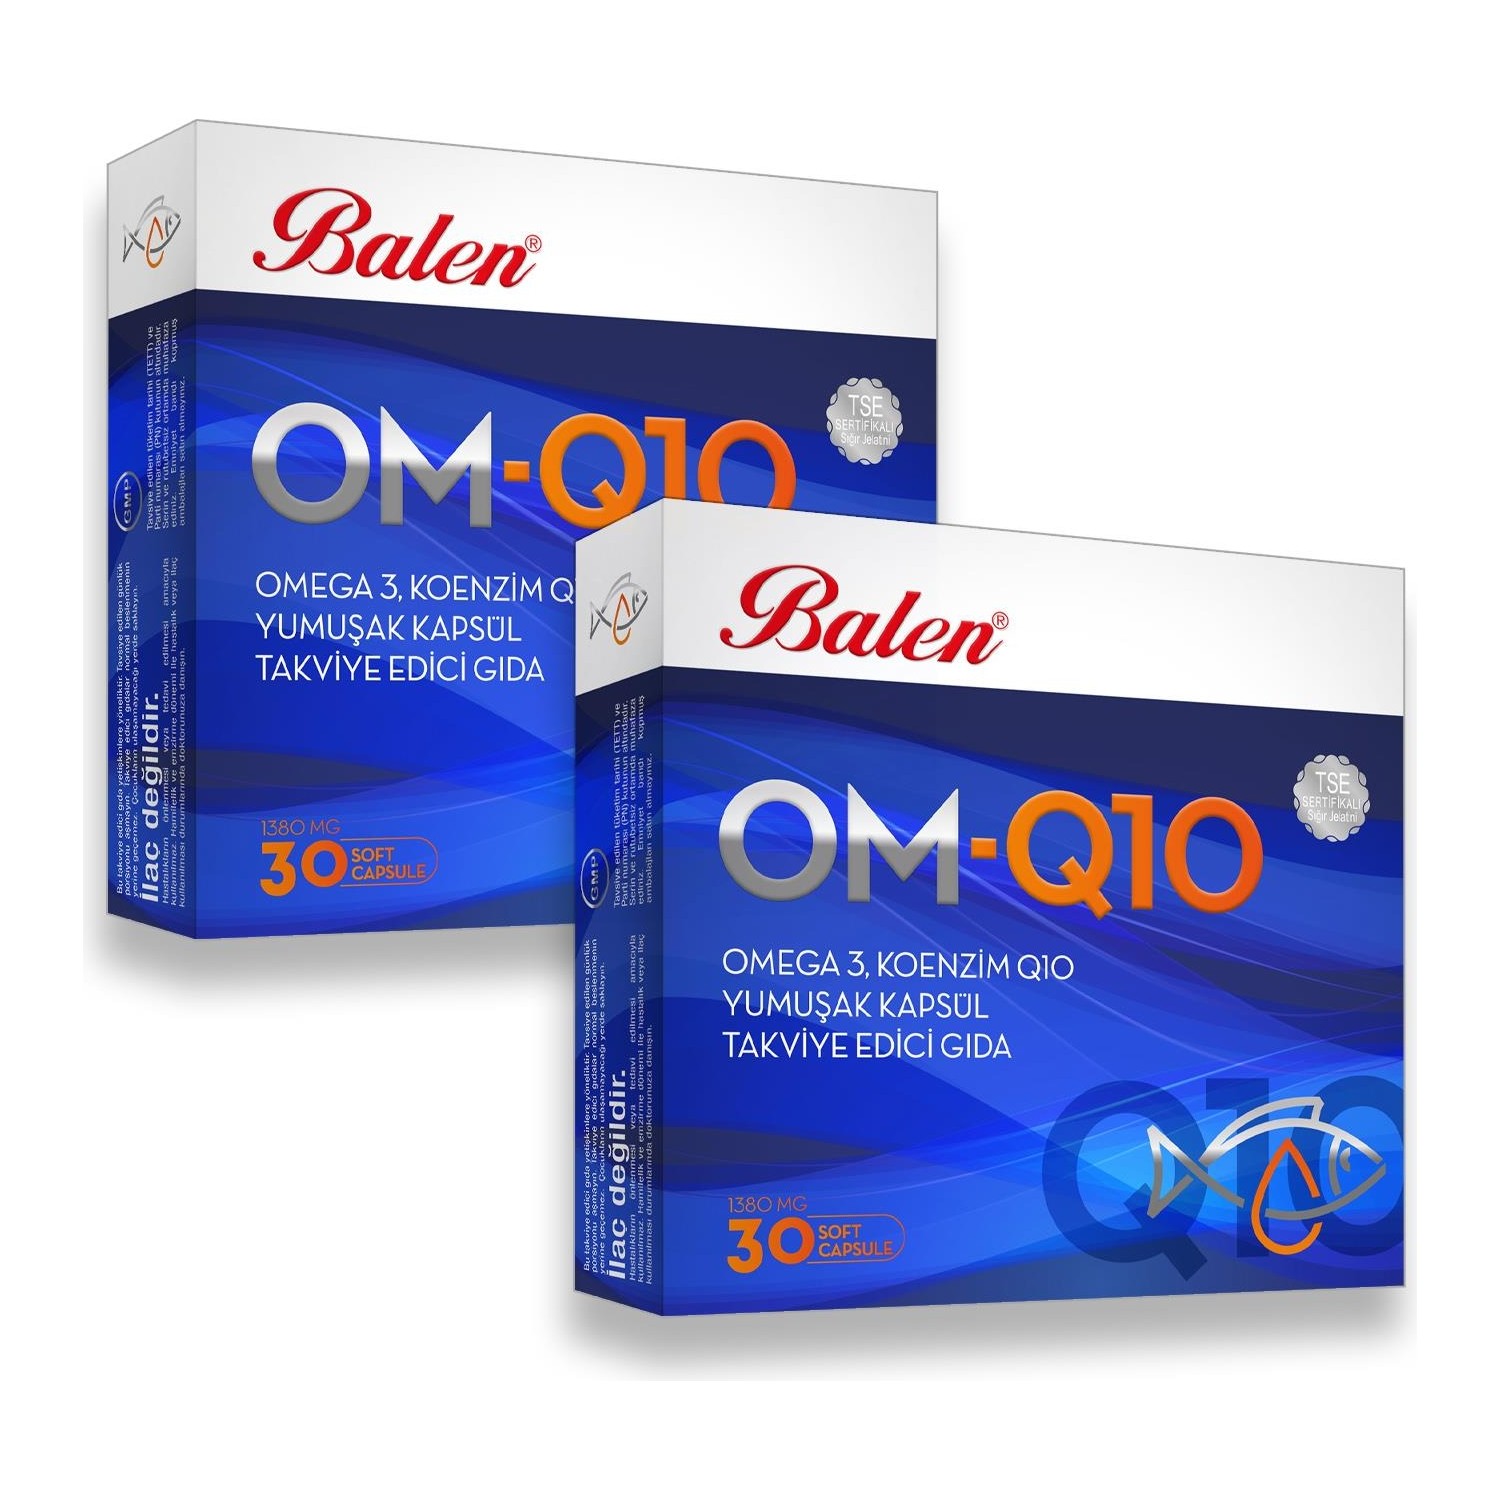 Рыбий жир Balen OM-Q10 Omega-3, 2 упаковки по 30 мягких капсул carlson коэнзим q10 100 мг 90 капсул